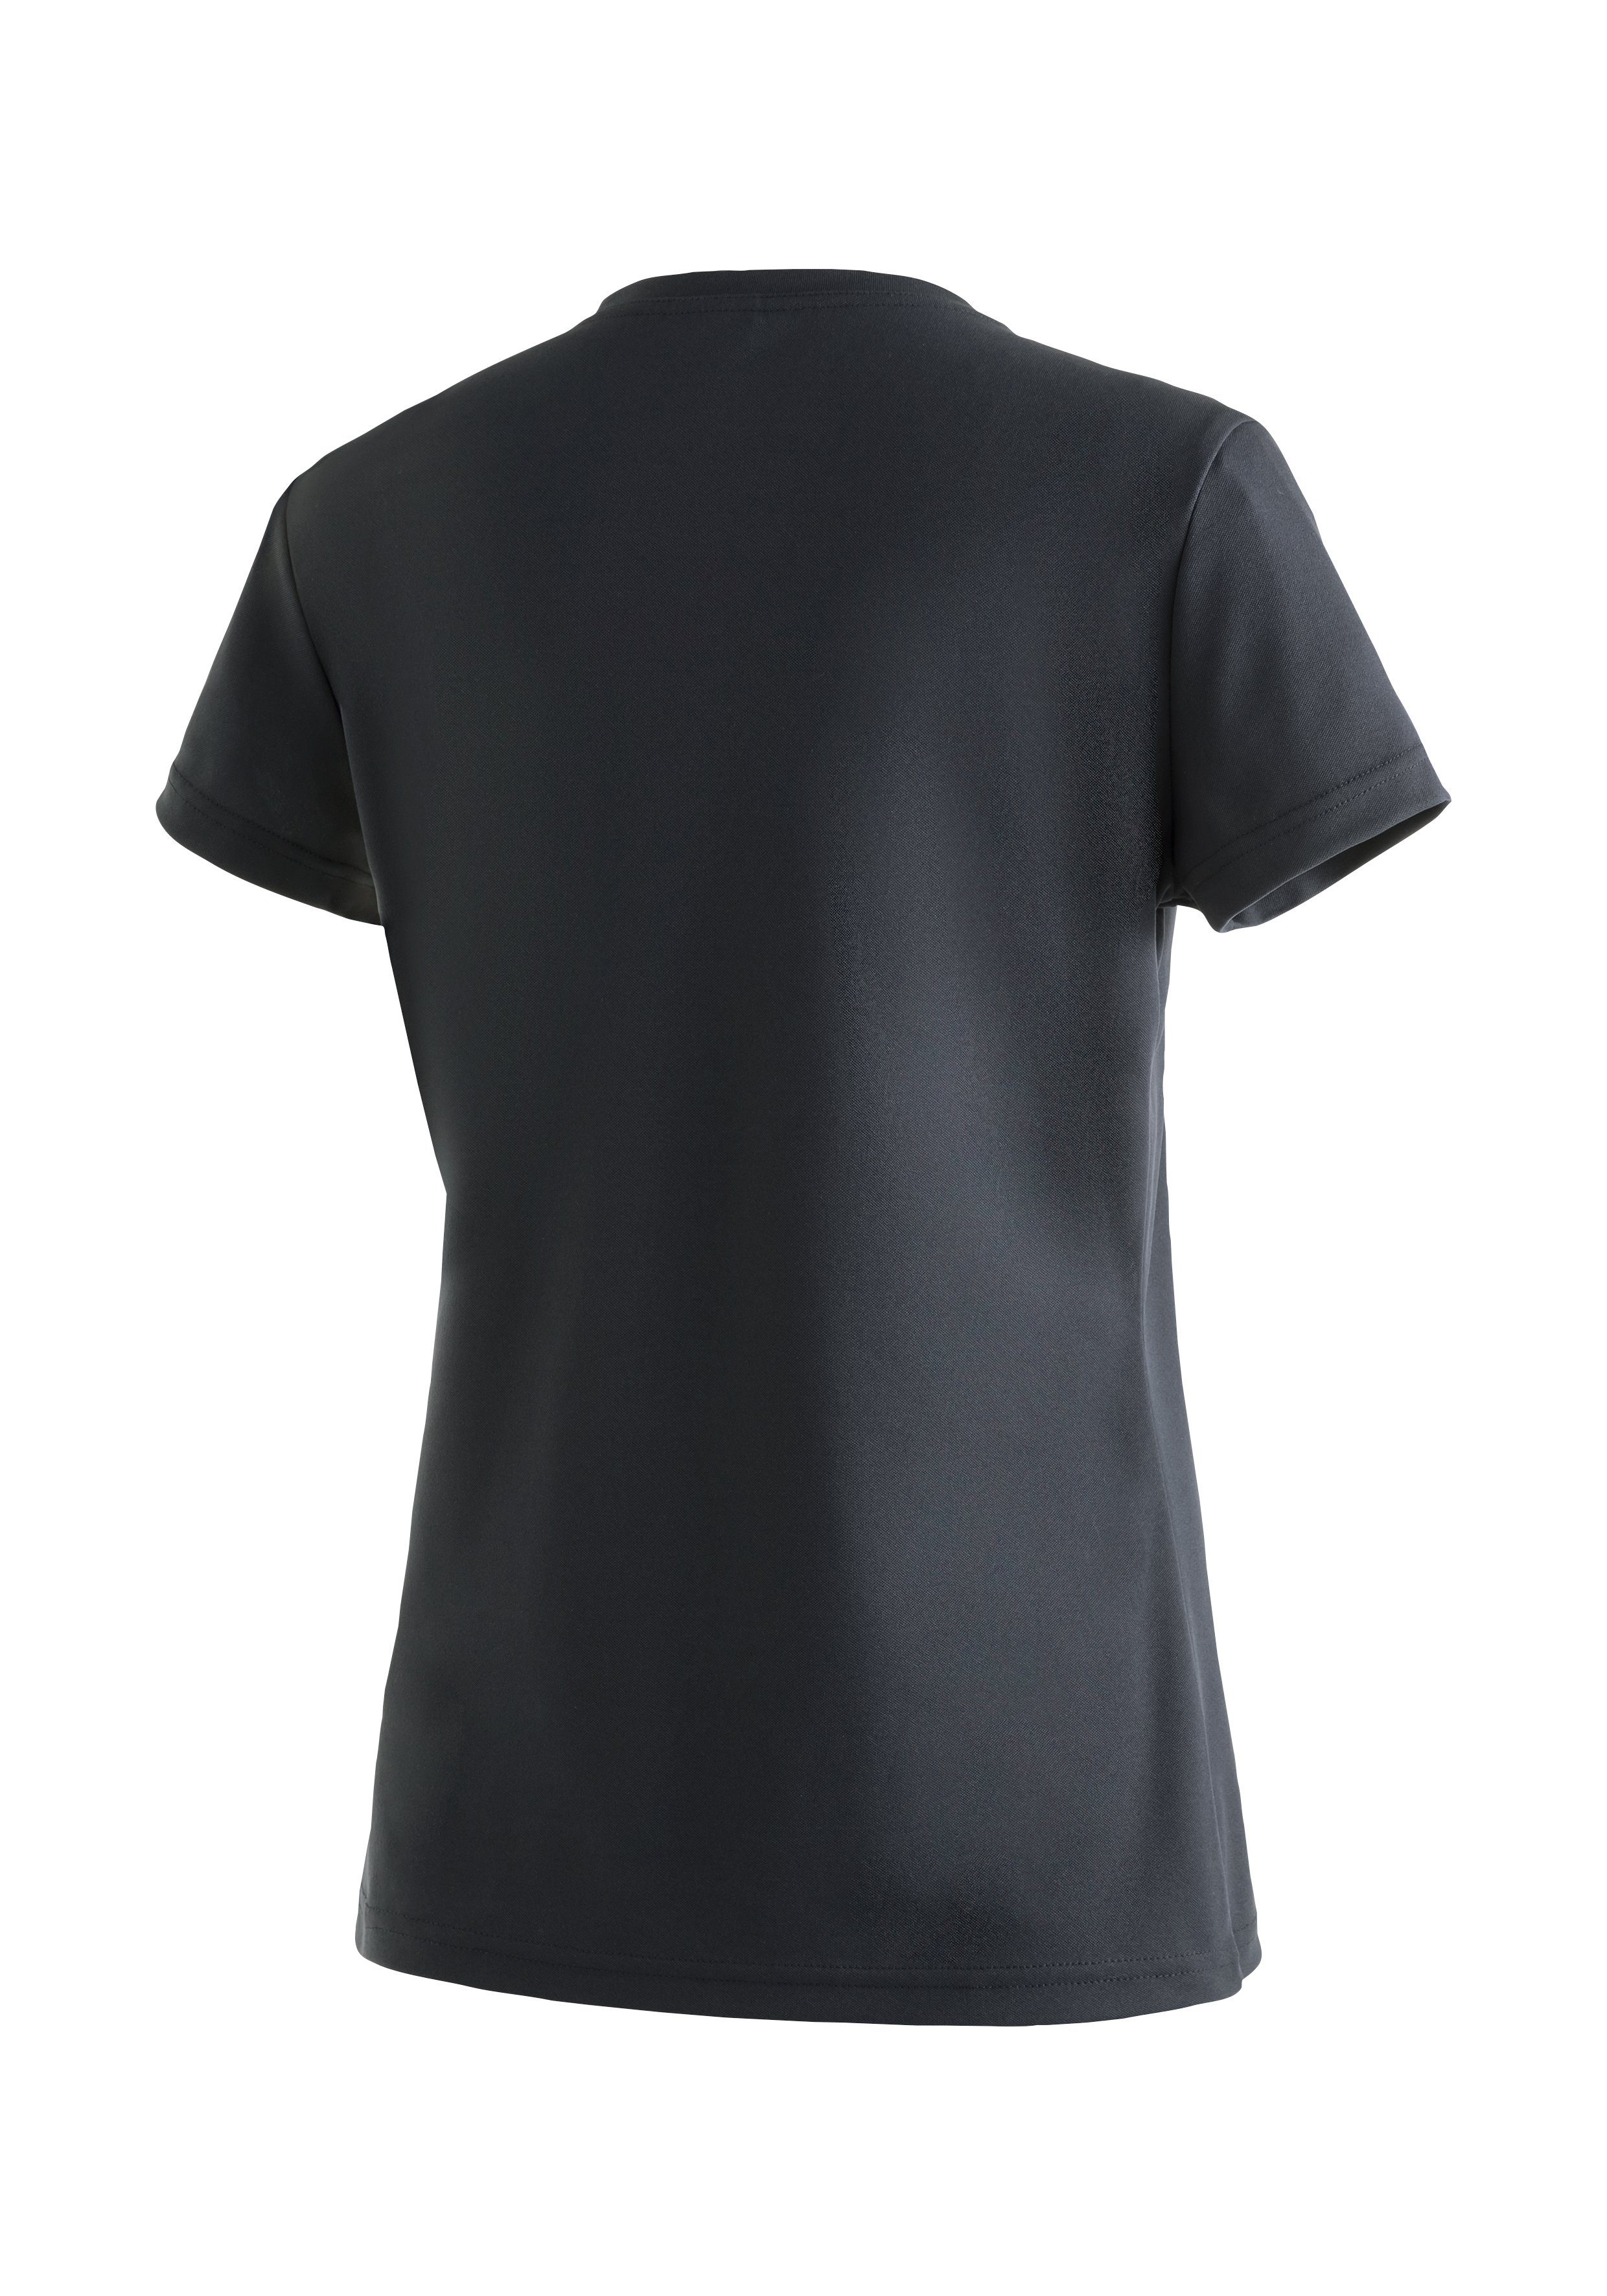 für Damen T-Shirt, Maier und Kurzarmshirt Sports Wandern Trudy Funktionsshirt Freizeit schwarz